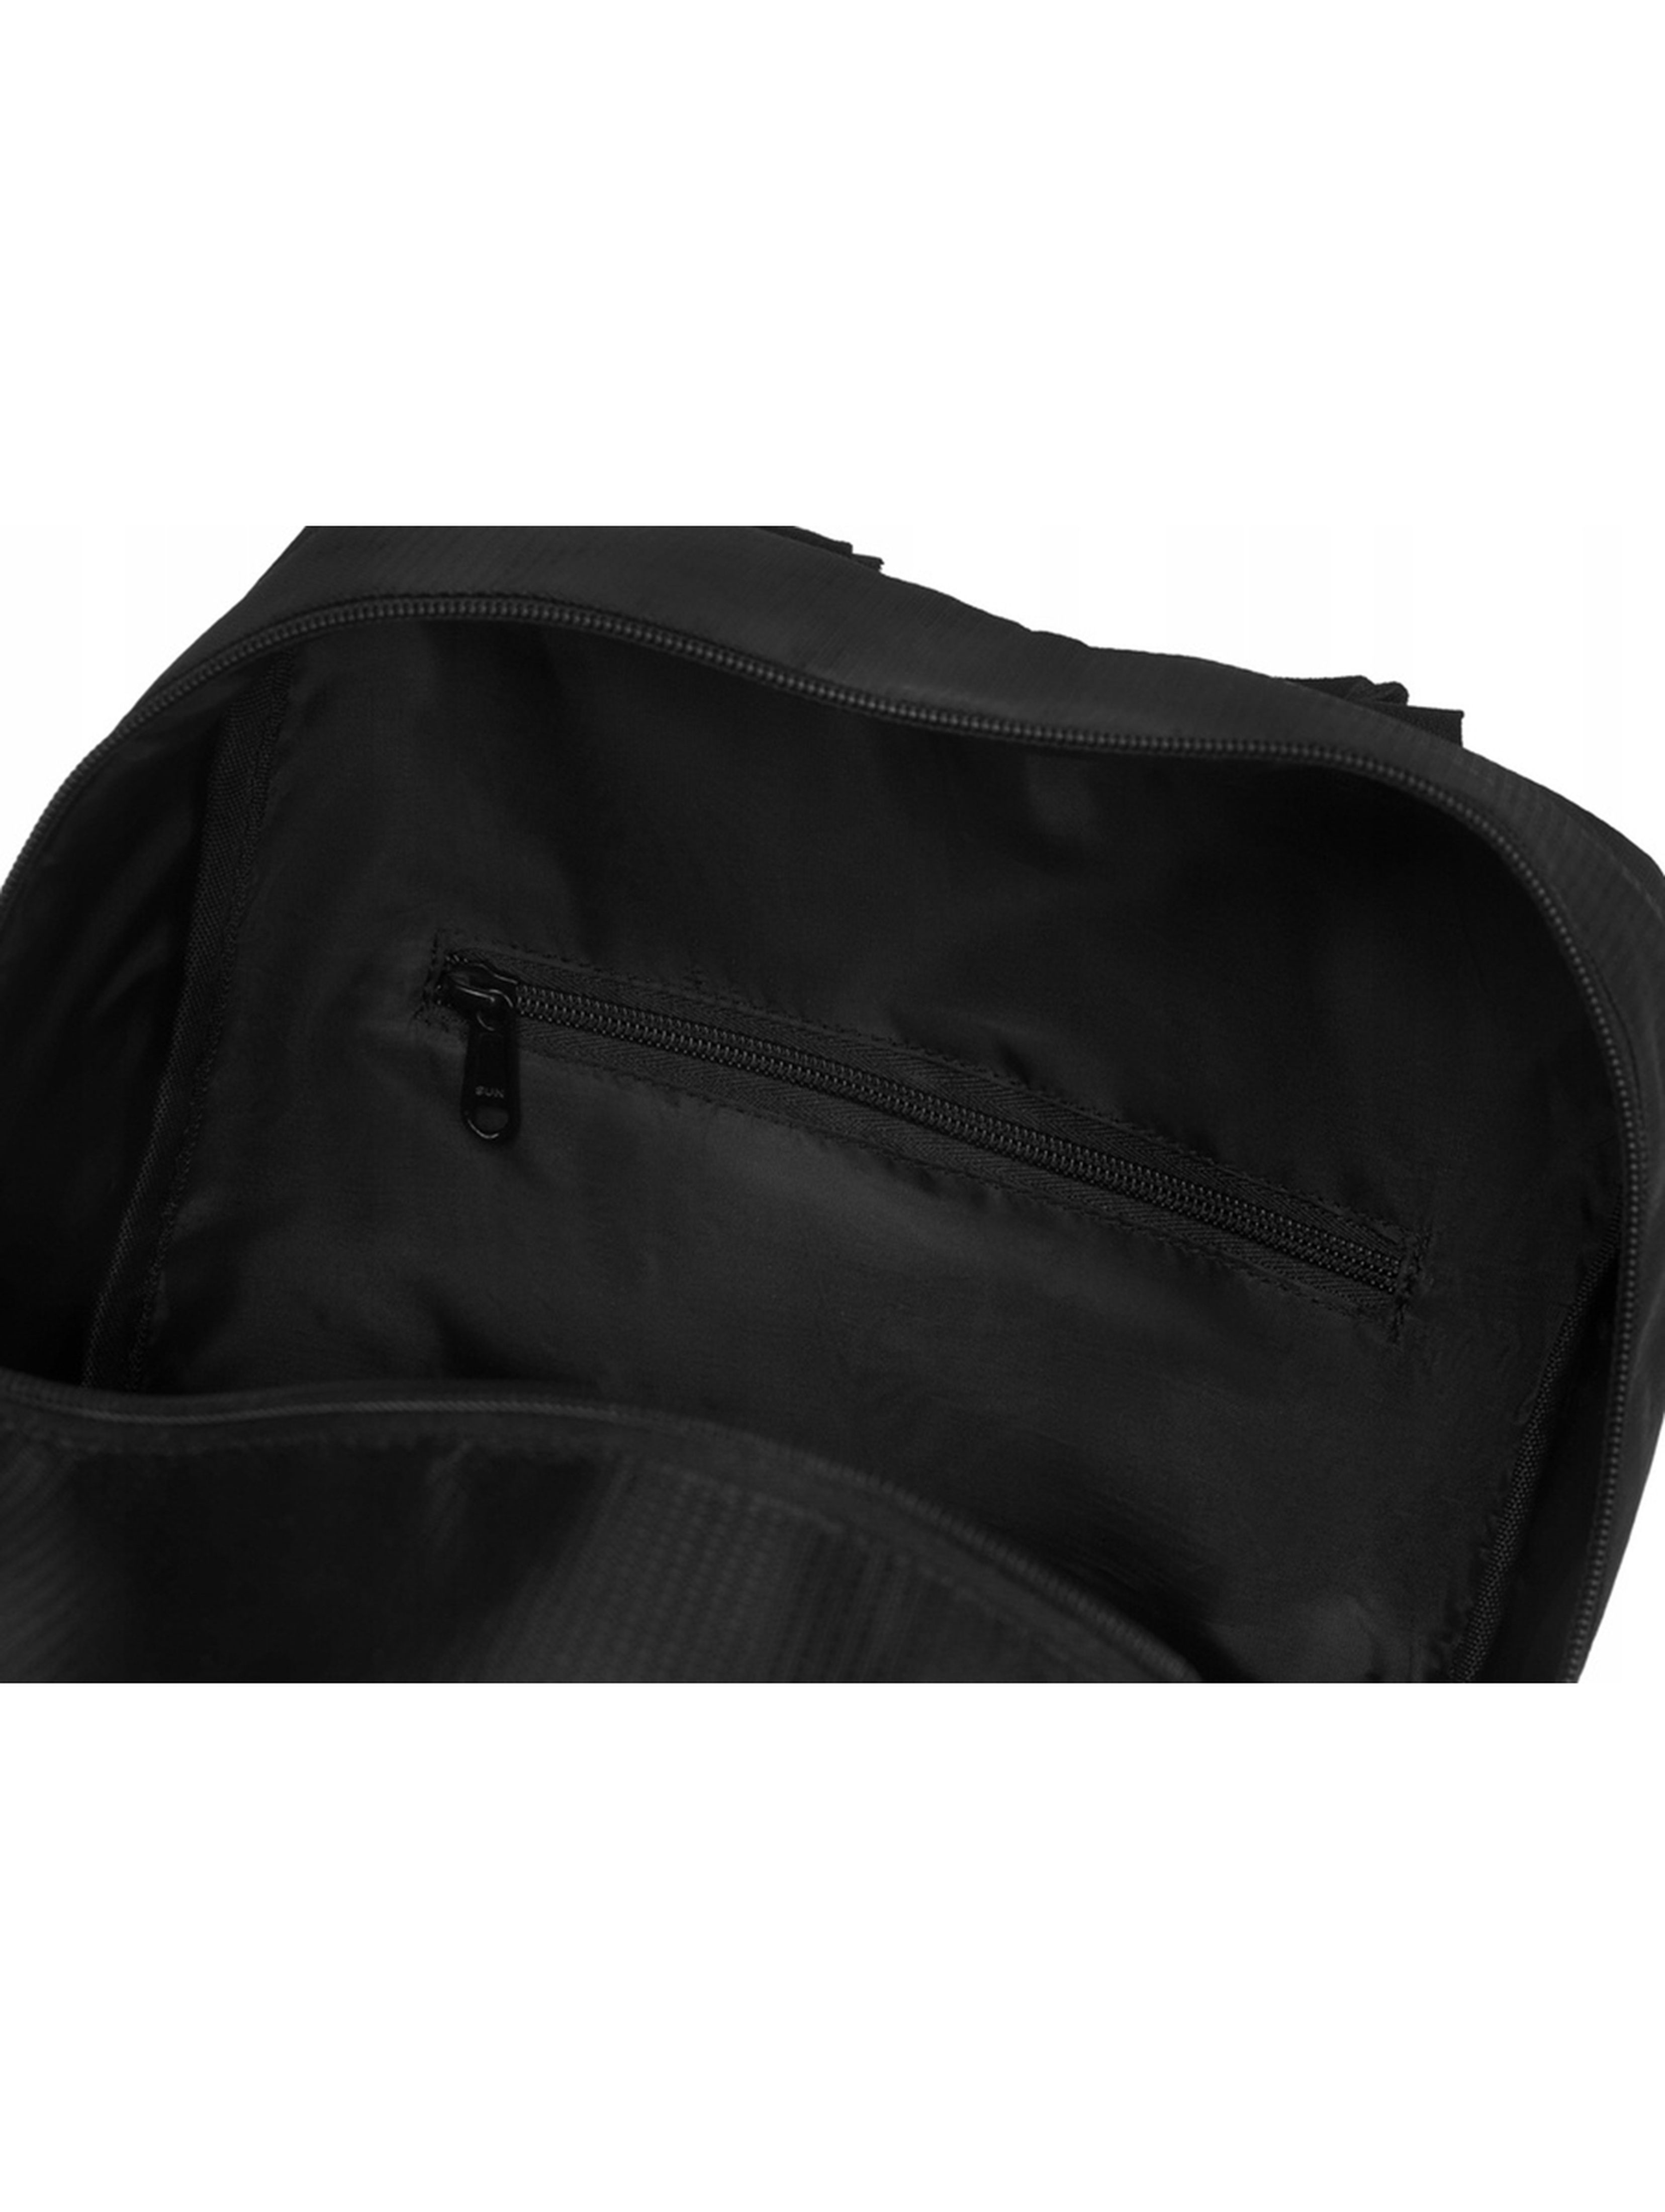 Poręczny, wodoodporny plecak-bagaż unisex podręczny do samolotu — Peterson